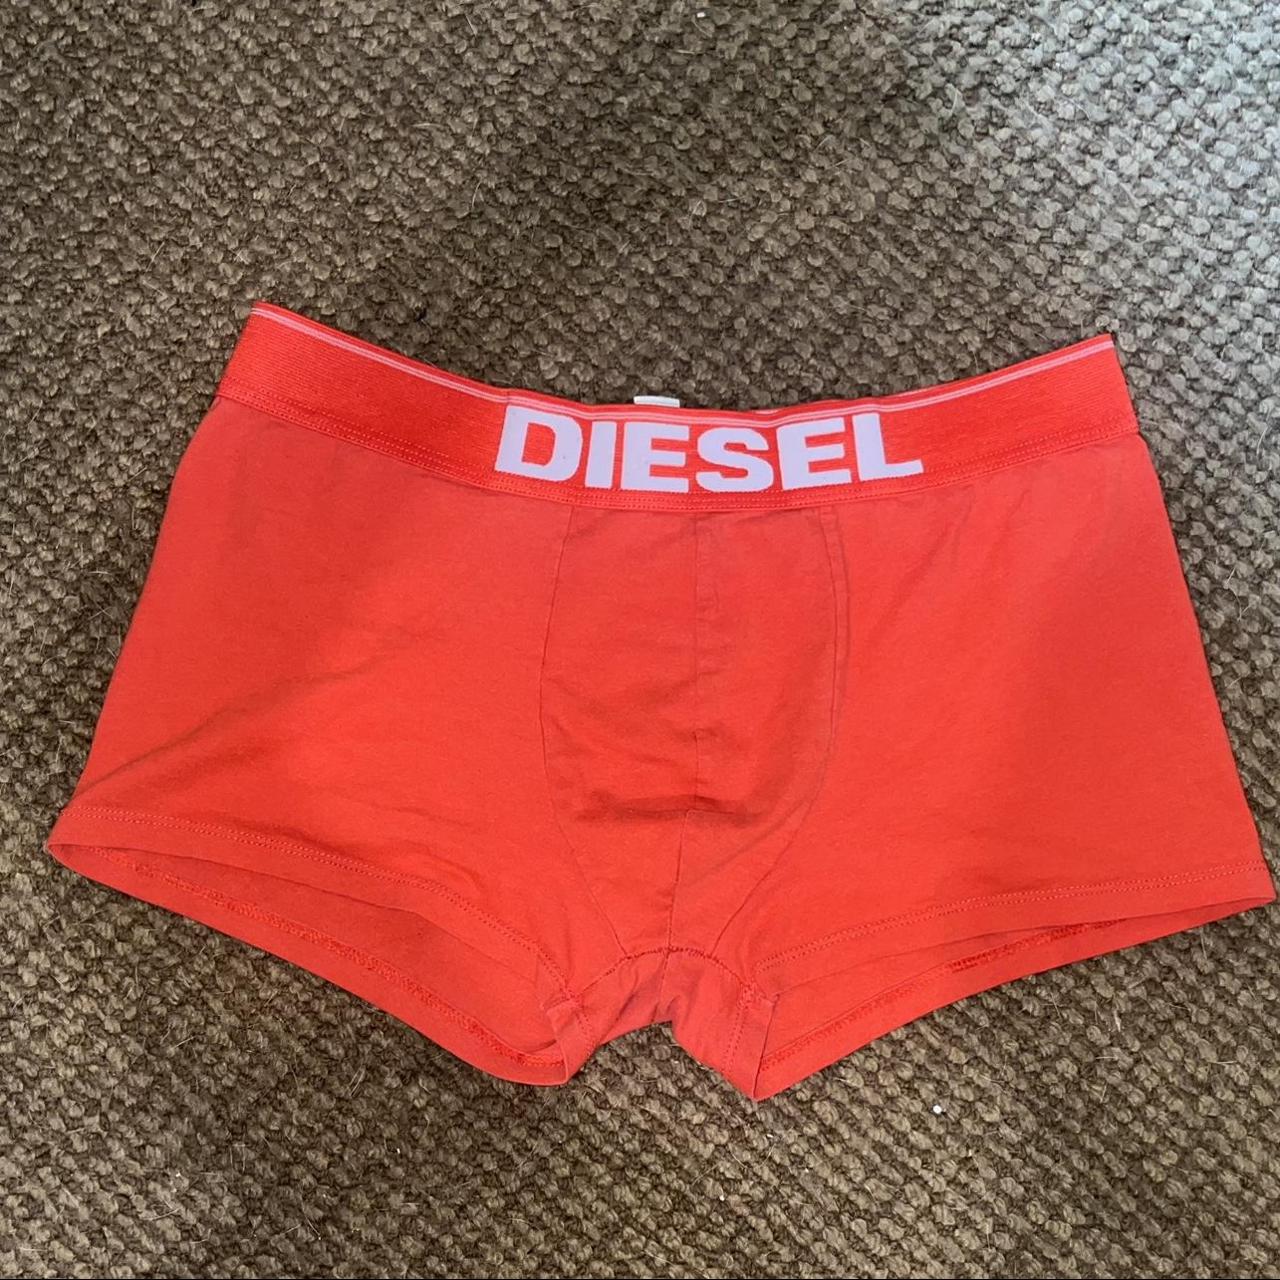 DIESEL orange underwear, i wore them as shorts, or... - Depop